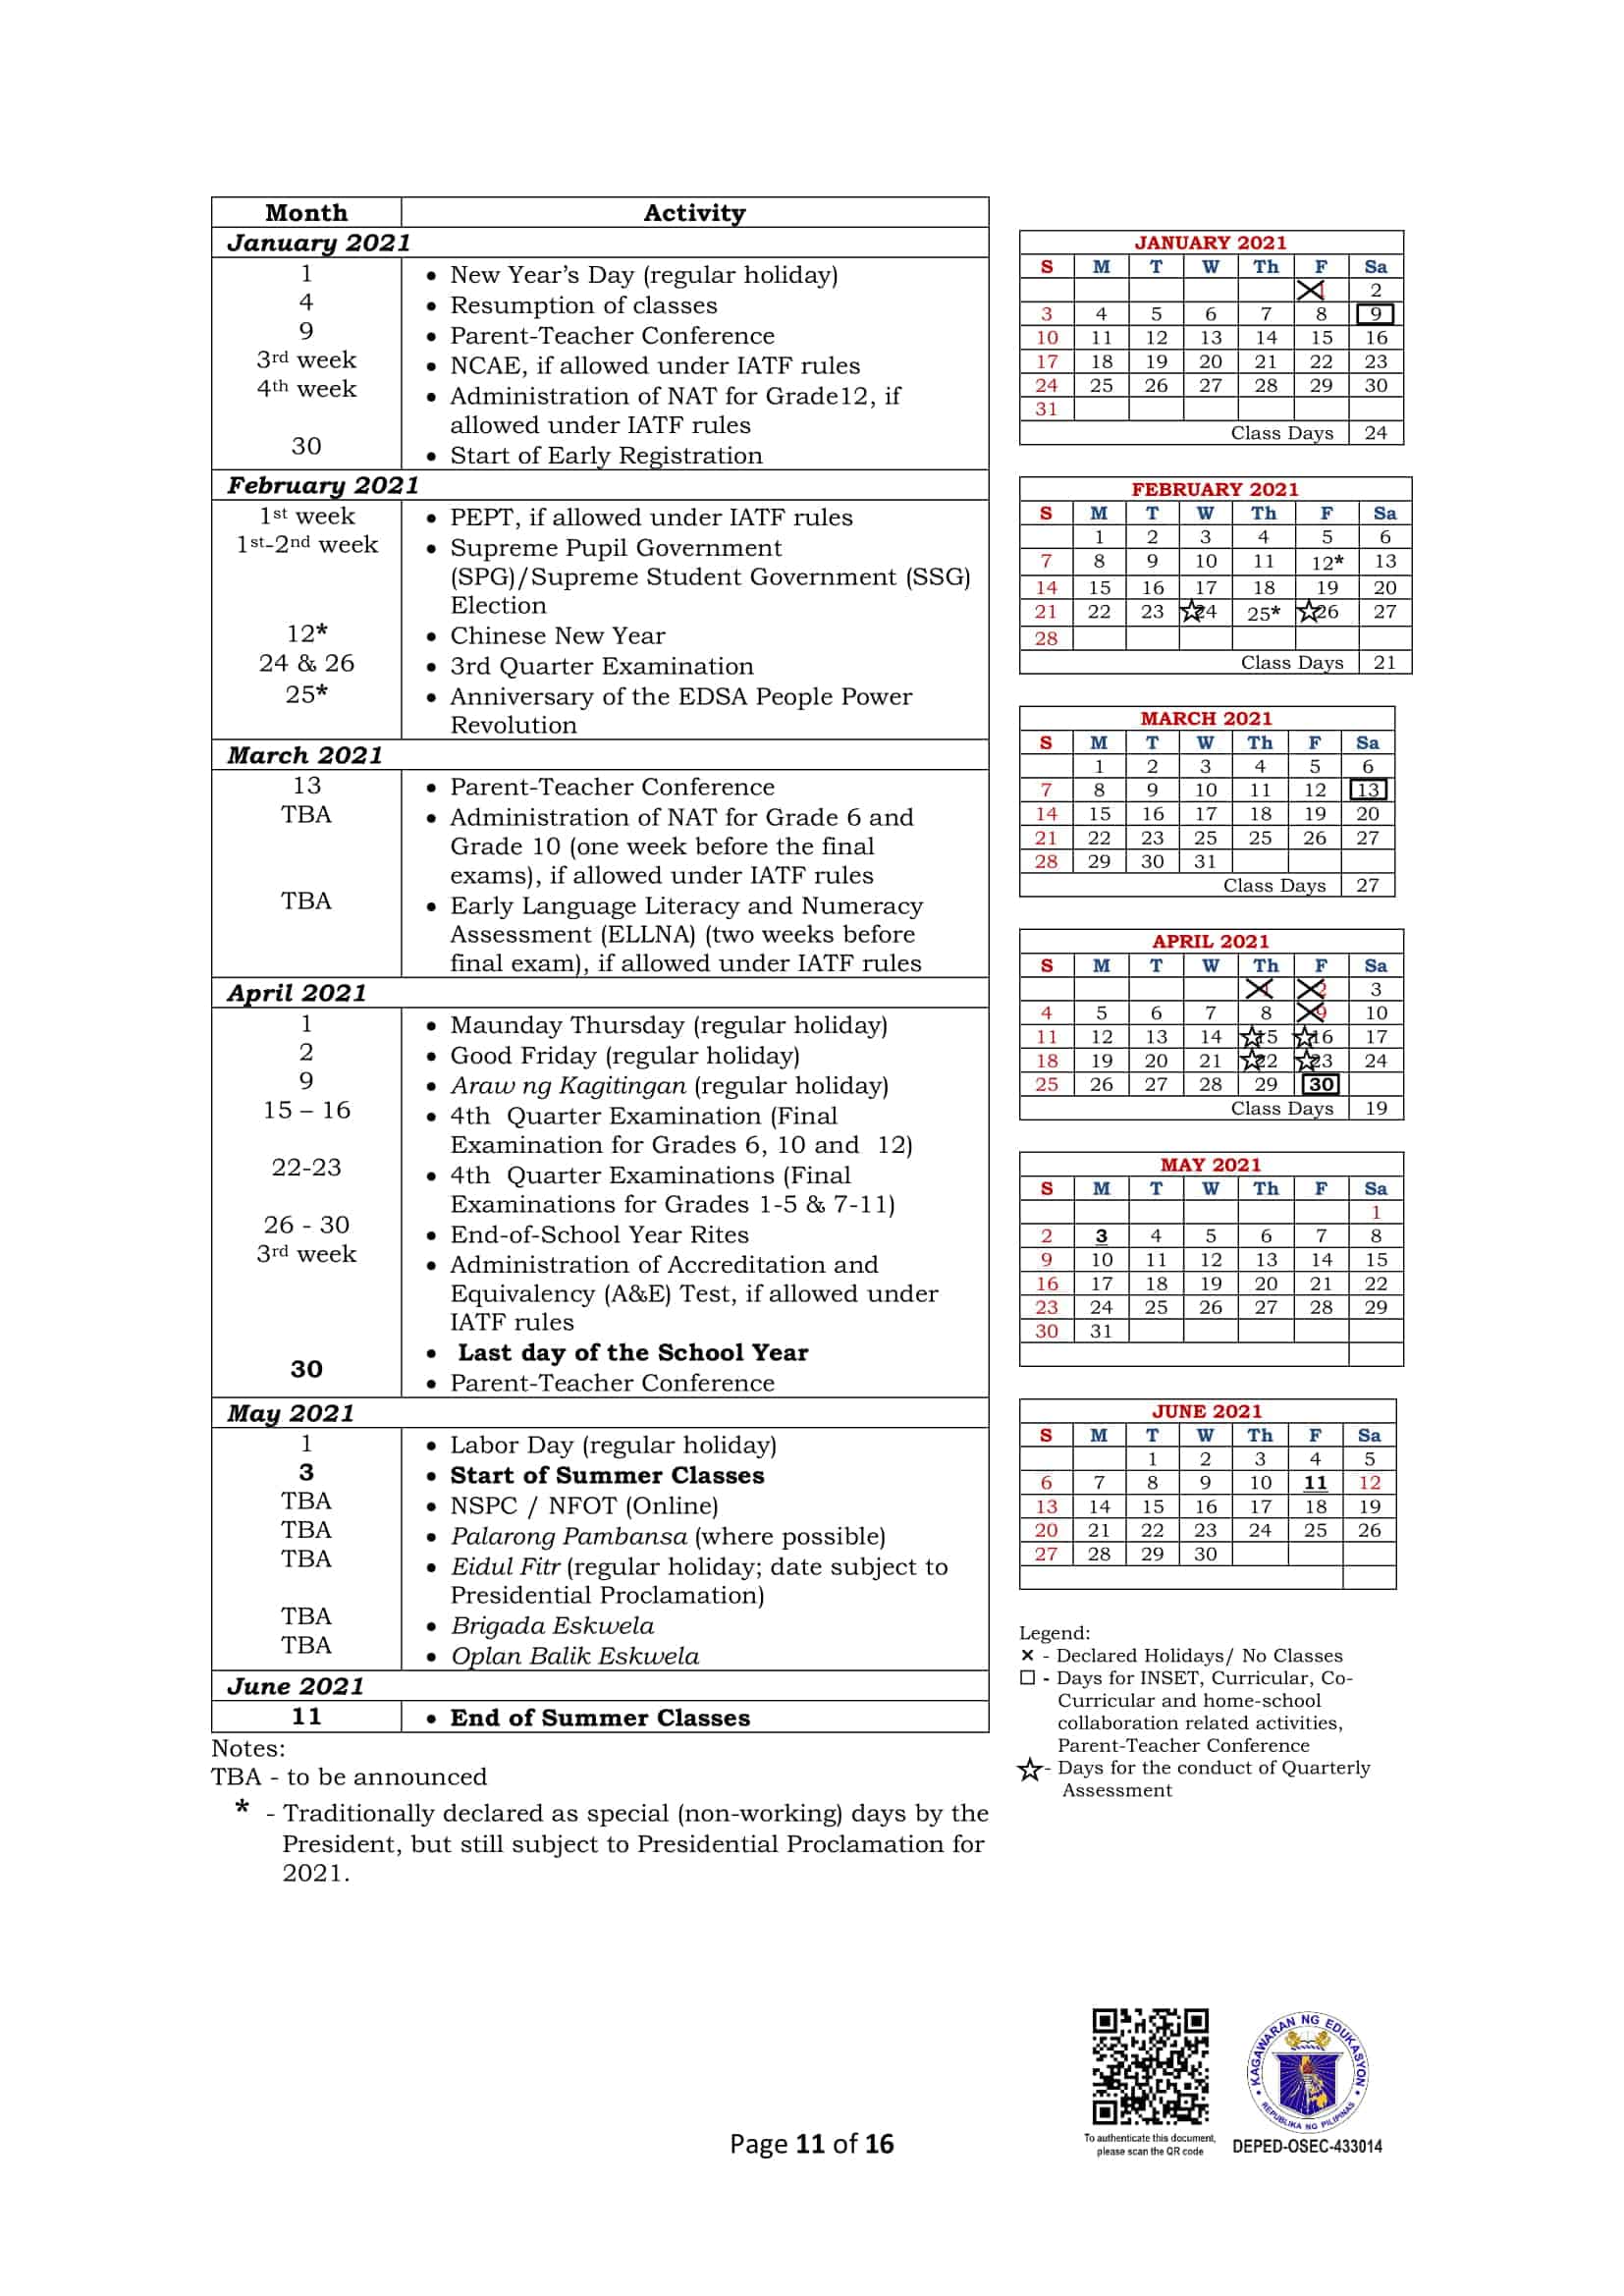 deped-monthly-school-calendar-of-activities-for-school-year-2020-2021